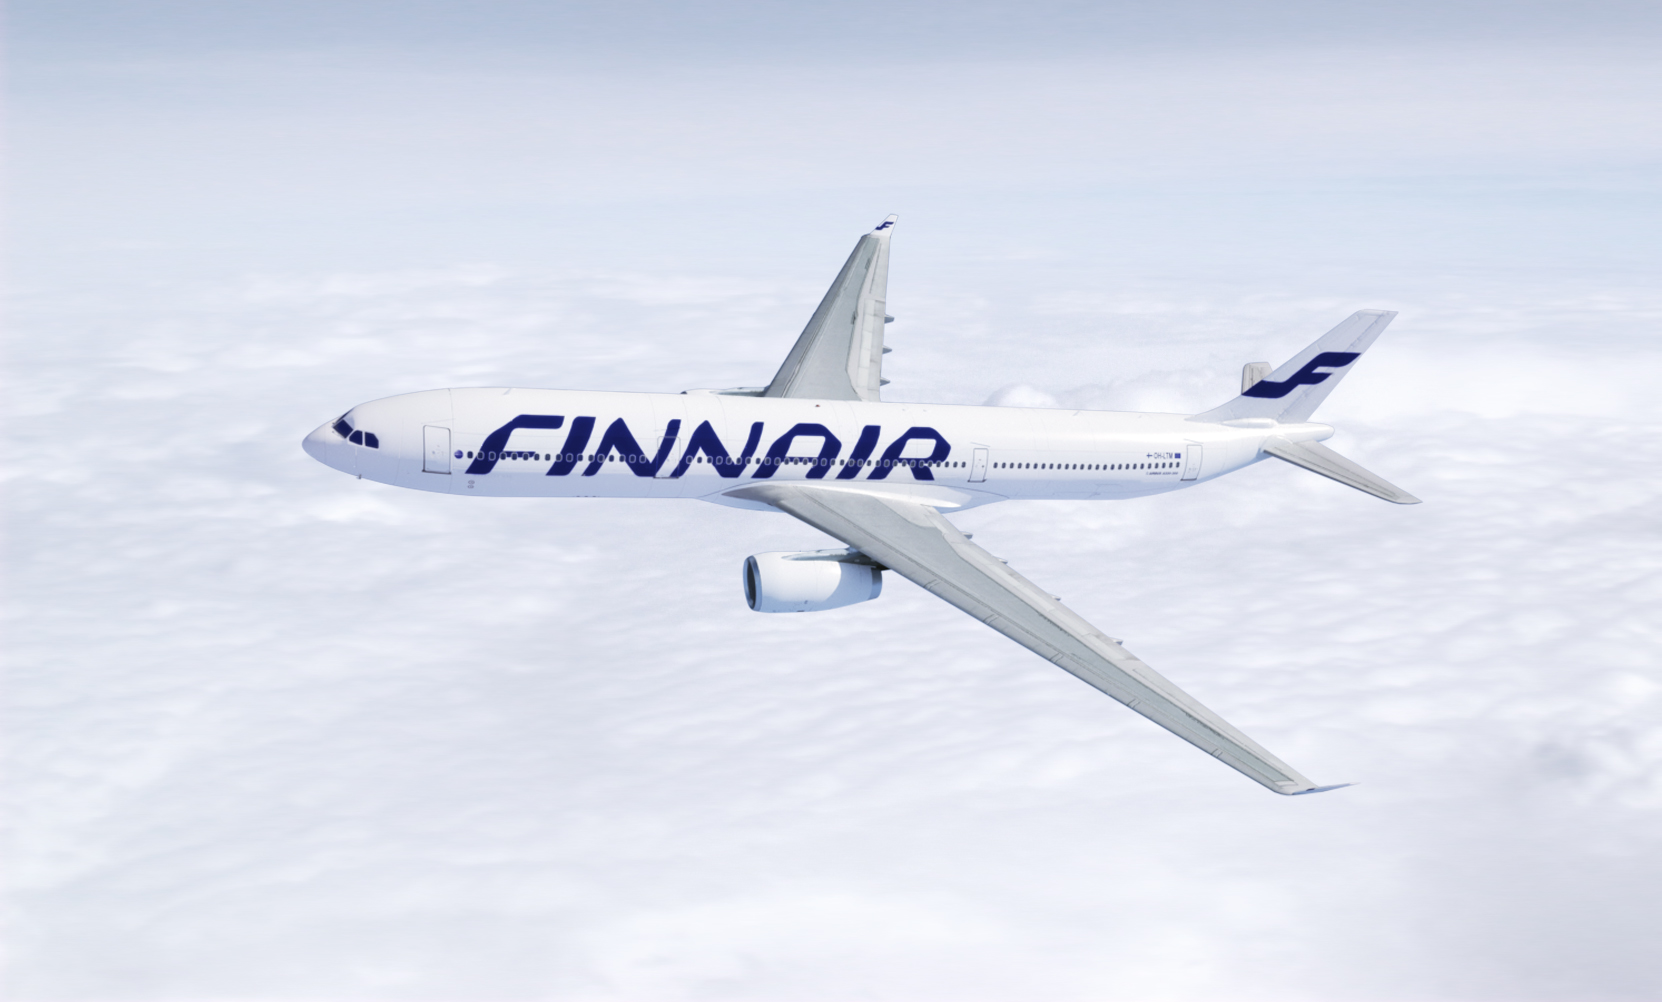 Lot Finnaira do Nowego Jorku na paliwie z przetworzonych olejów spożywczych